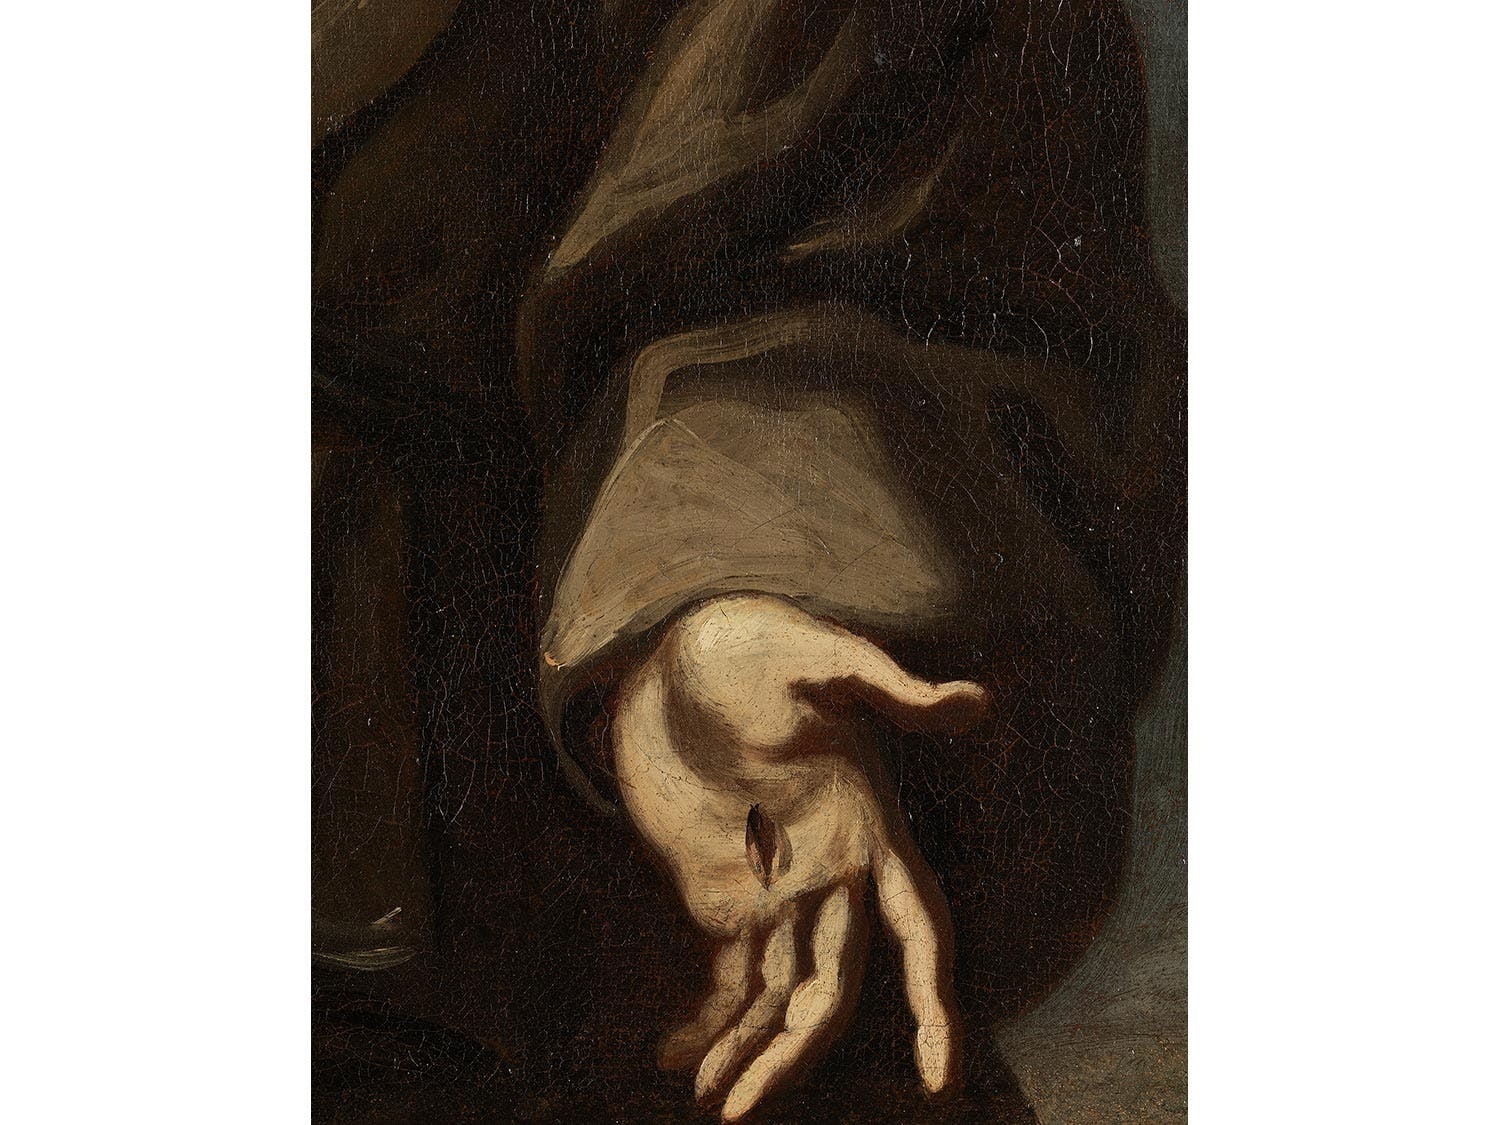 Artwork by Alessandro Magnasco, Der Heilige Franz von Assisi empfängt
die Stigmata, Made of Oil on canvas